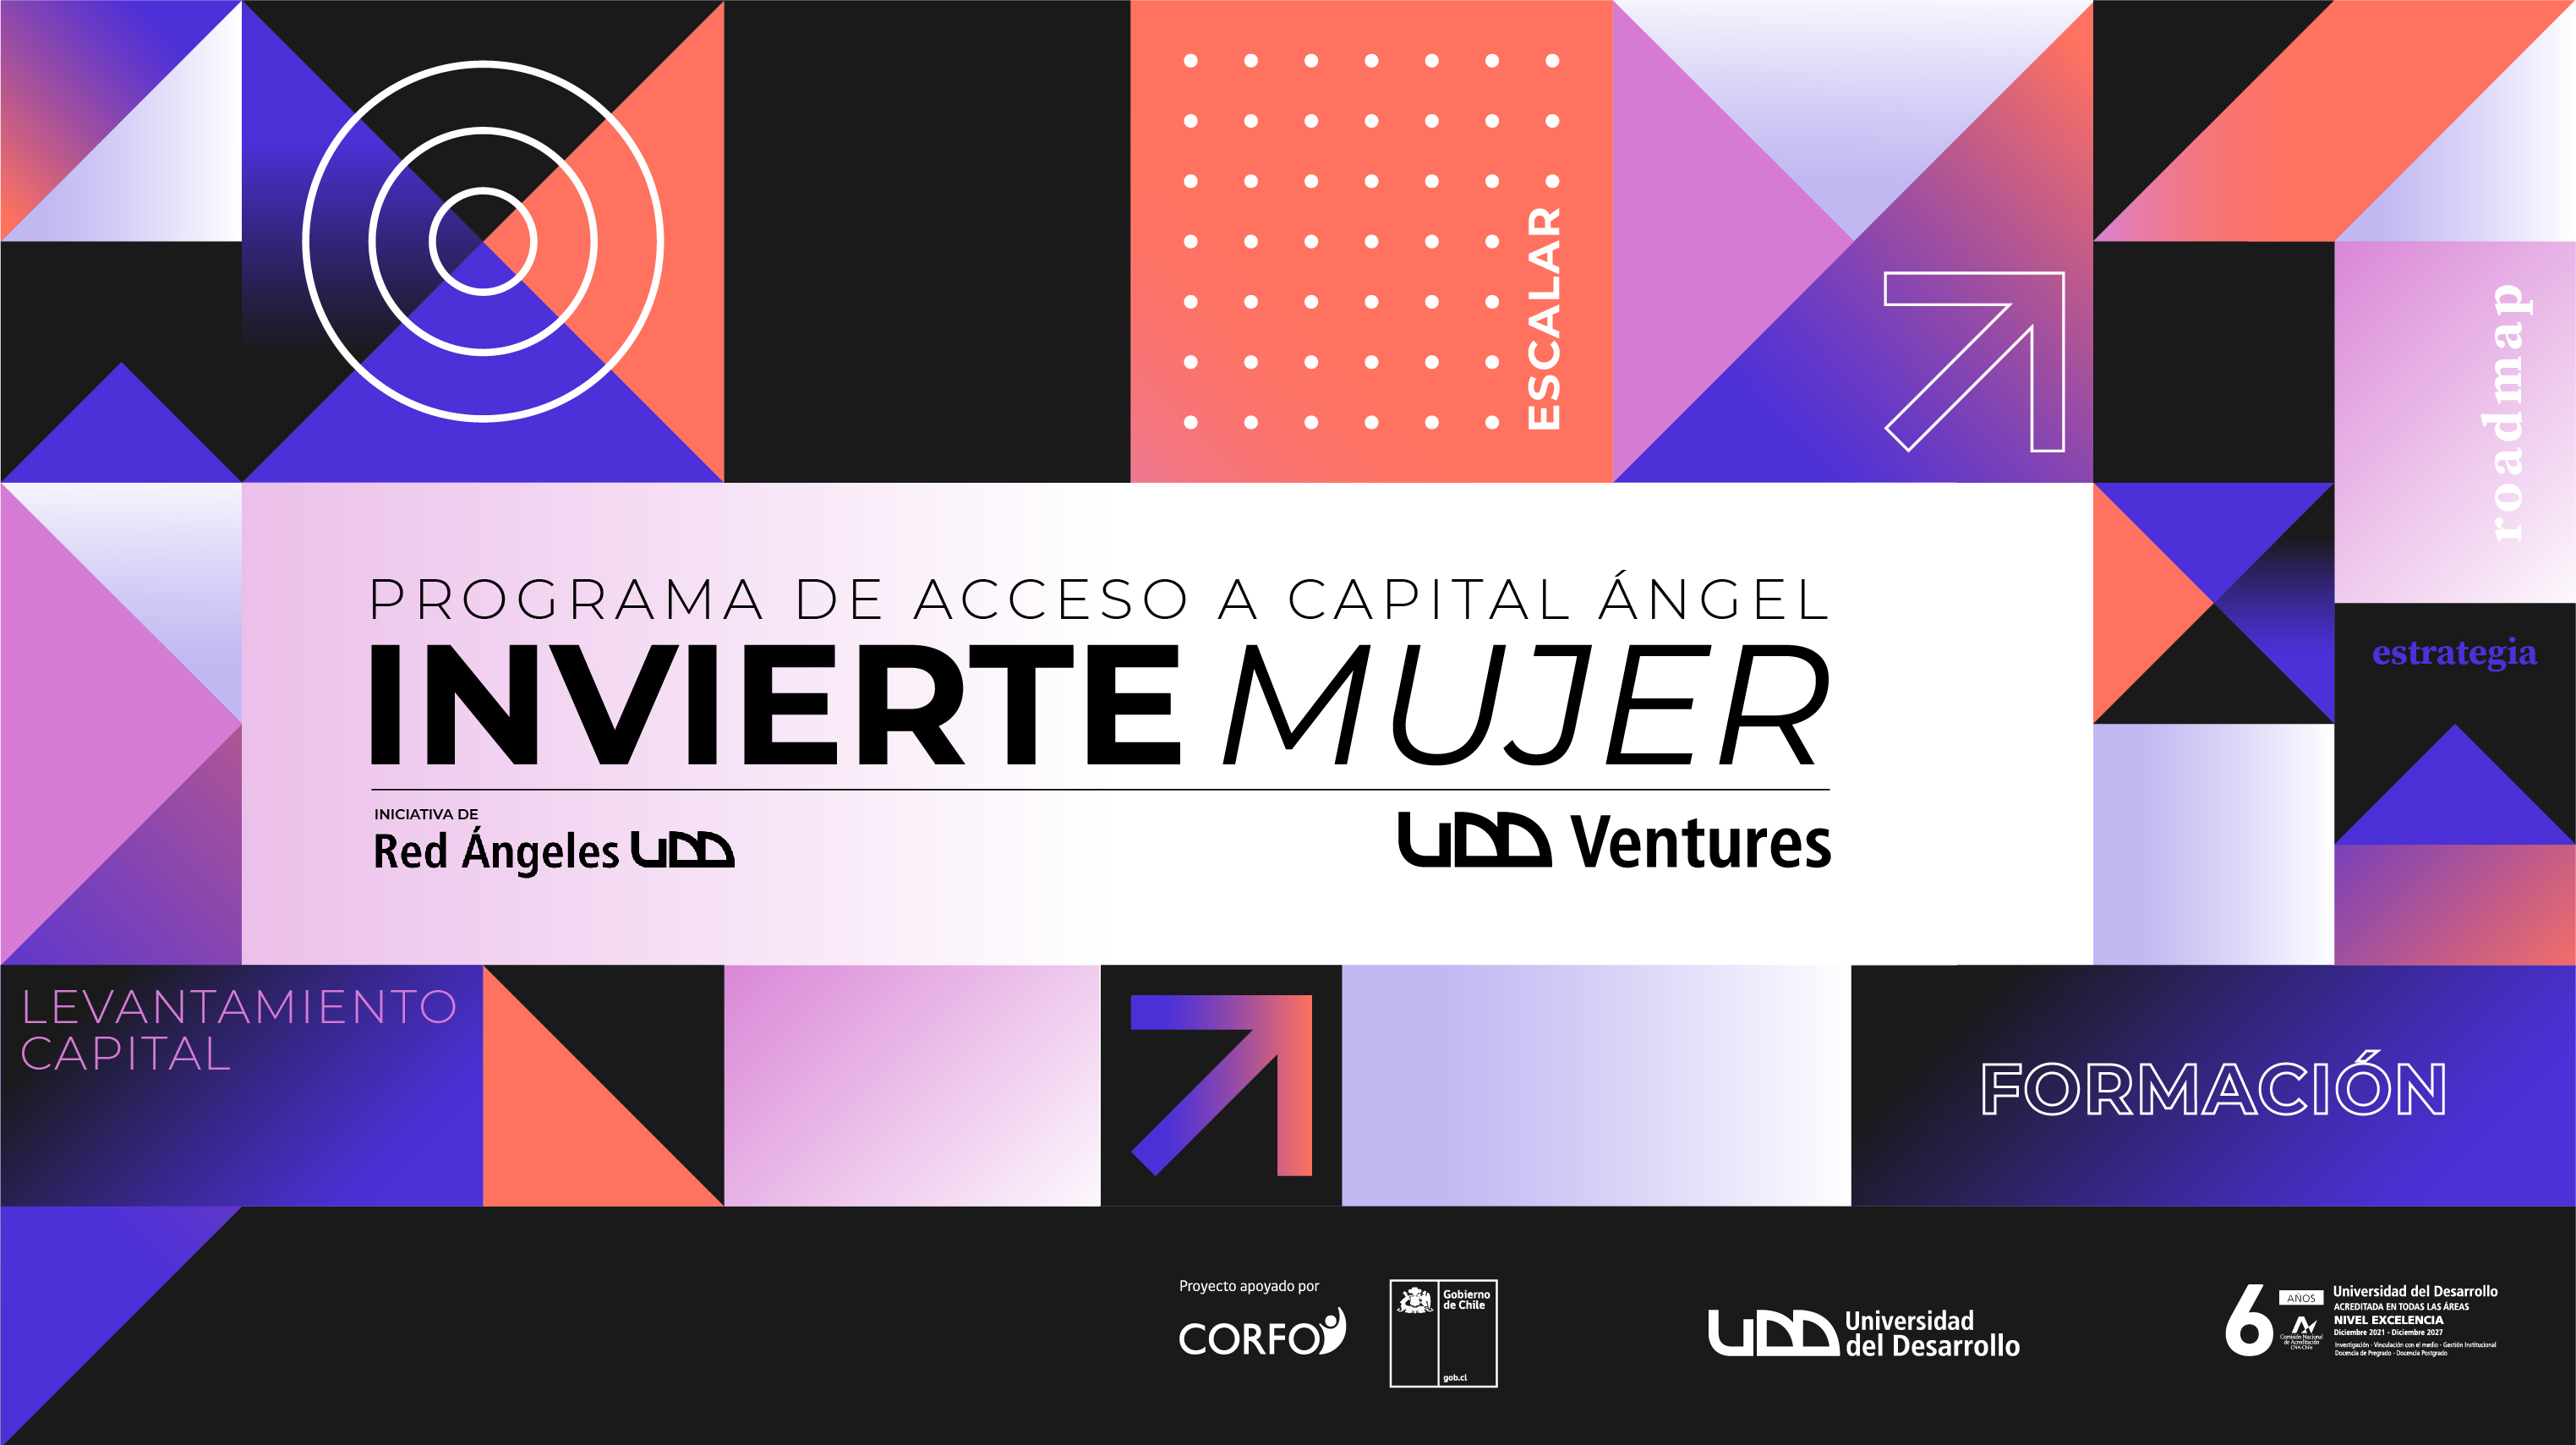 UDD Ventures lanza convocatoria del programa Invierte Mujer para apoyar startups que busquen inversión.